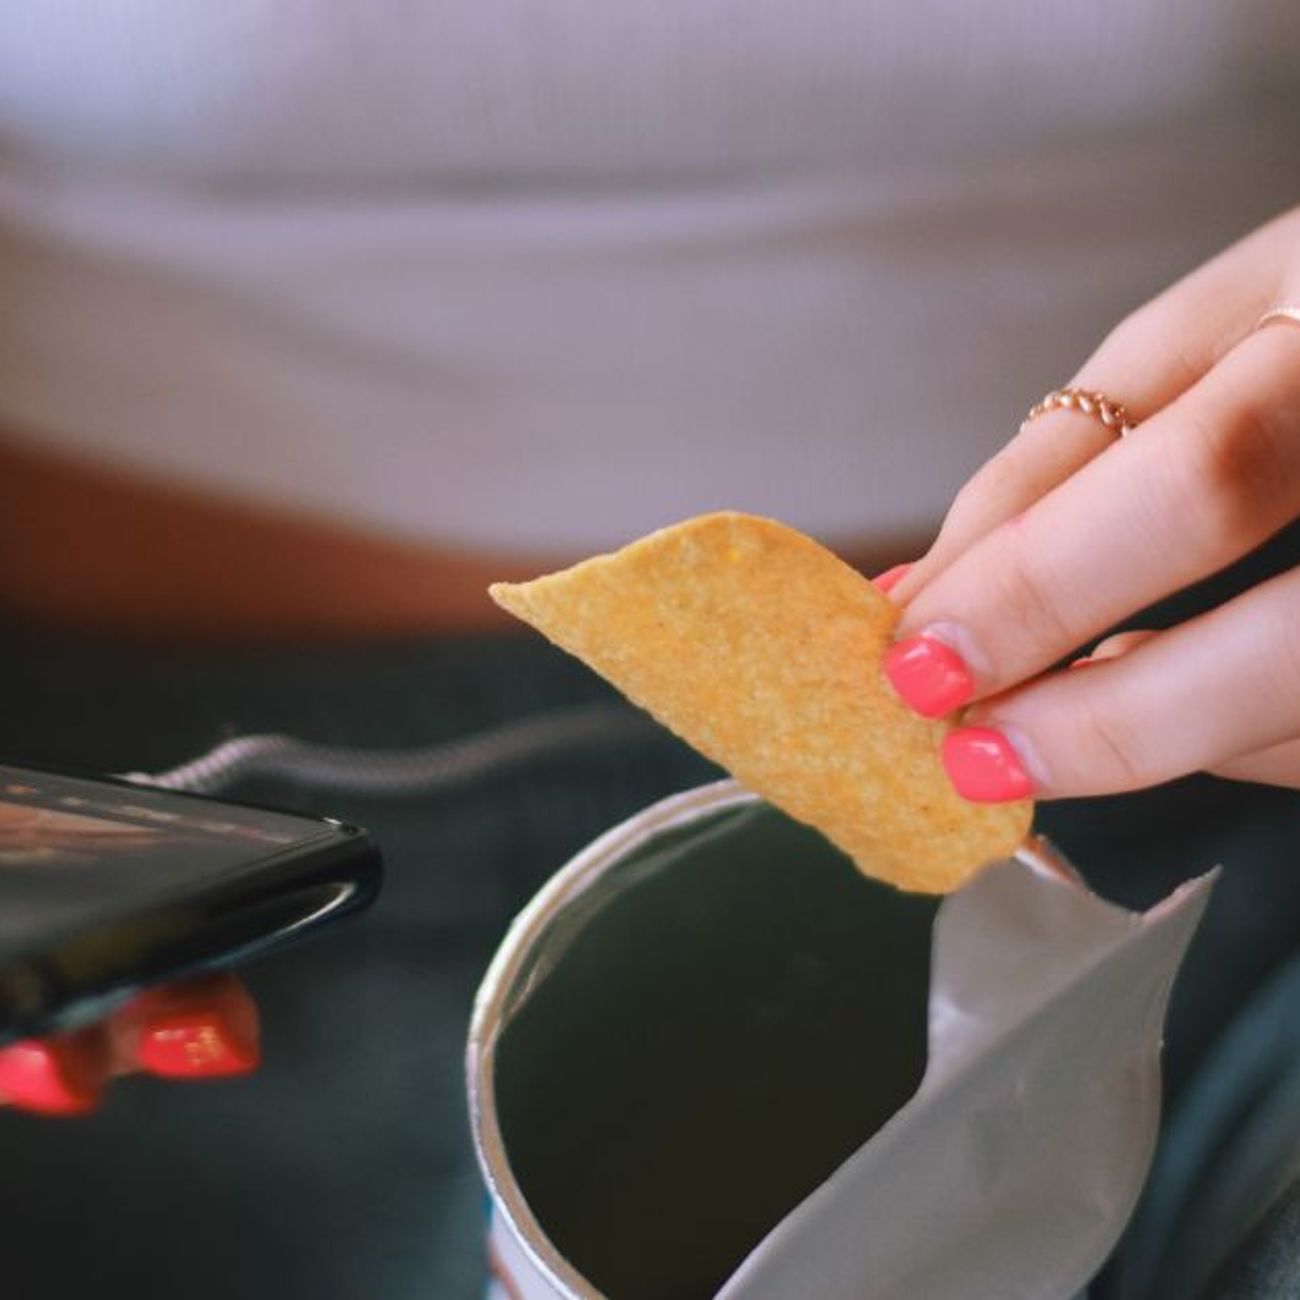 One Chip Challenge, ce nouveau défi alimentaire qui inquiète